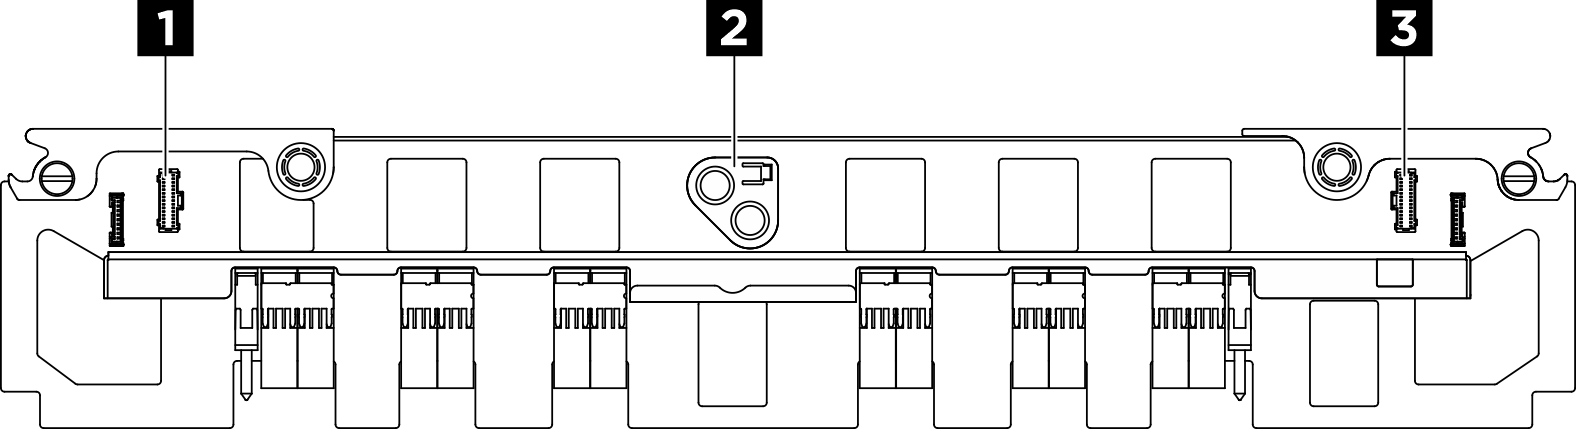 PSU-Interposer connectors